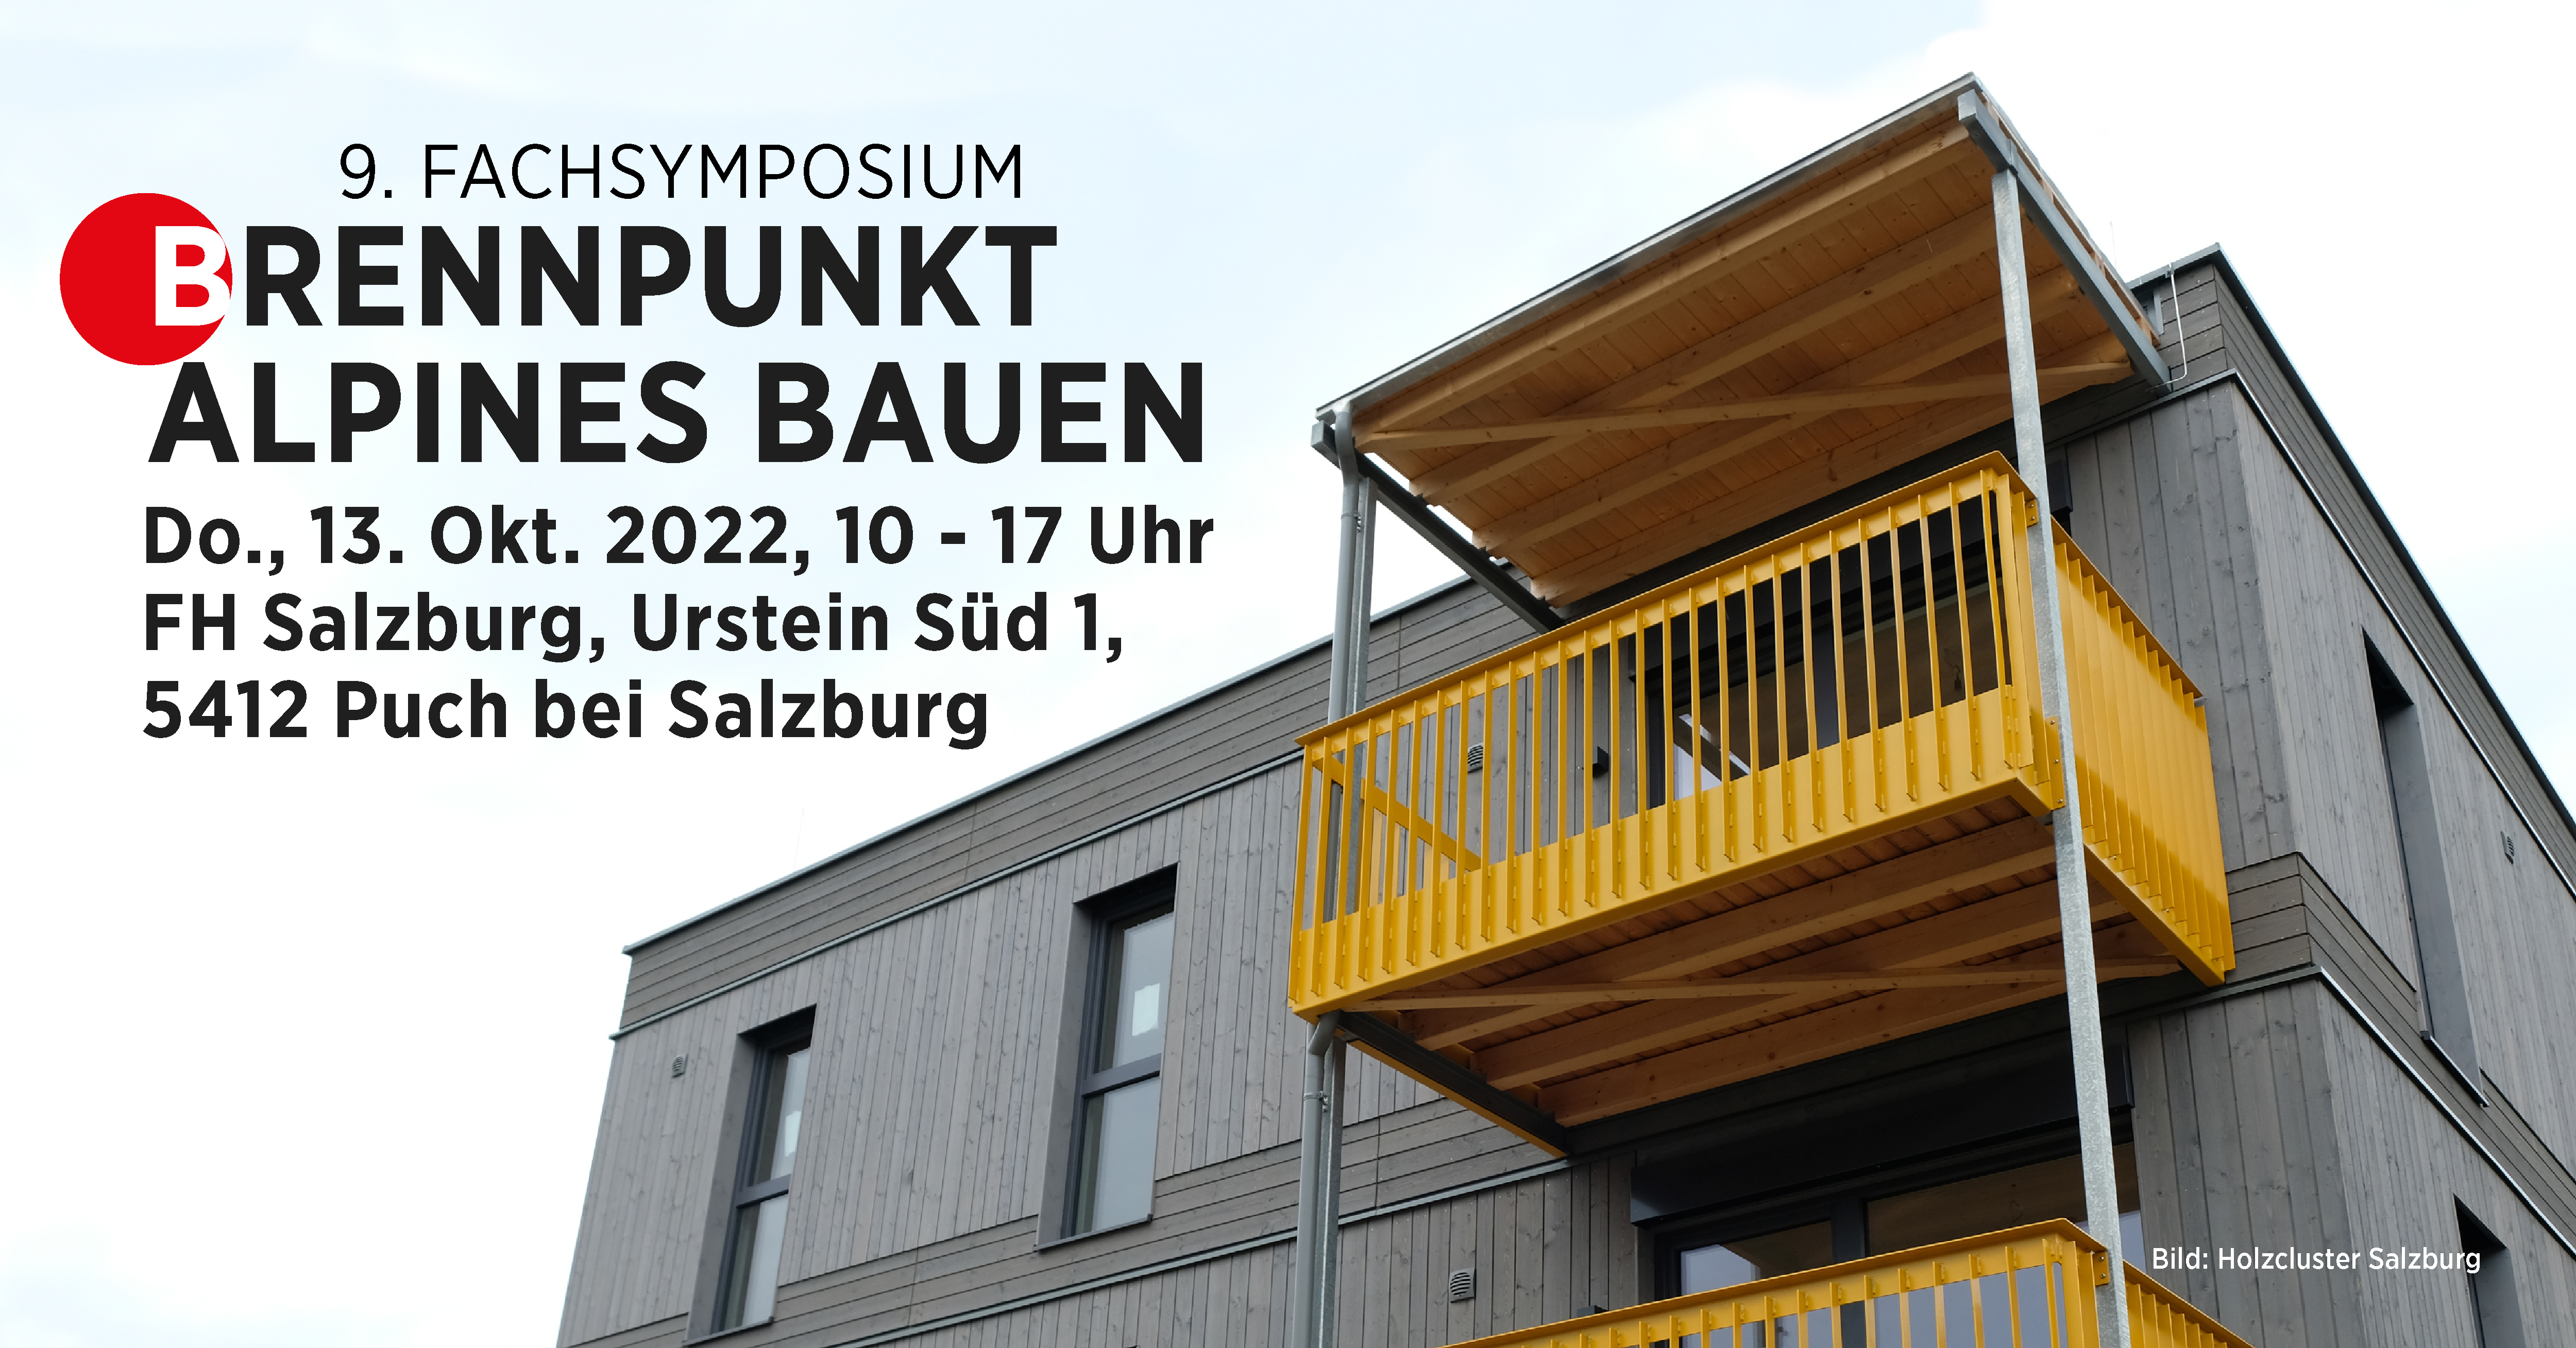 Brennpunkt Alpines Bauen 9. Fachsymposium Quelle: Holzcluster Salzburg